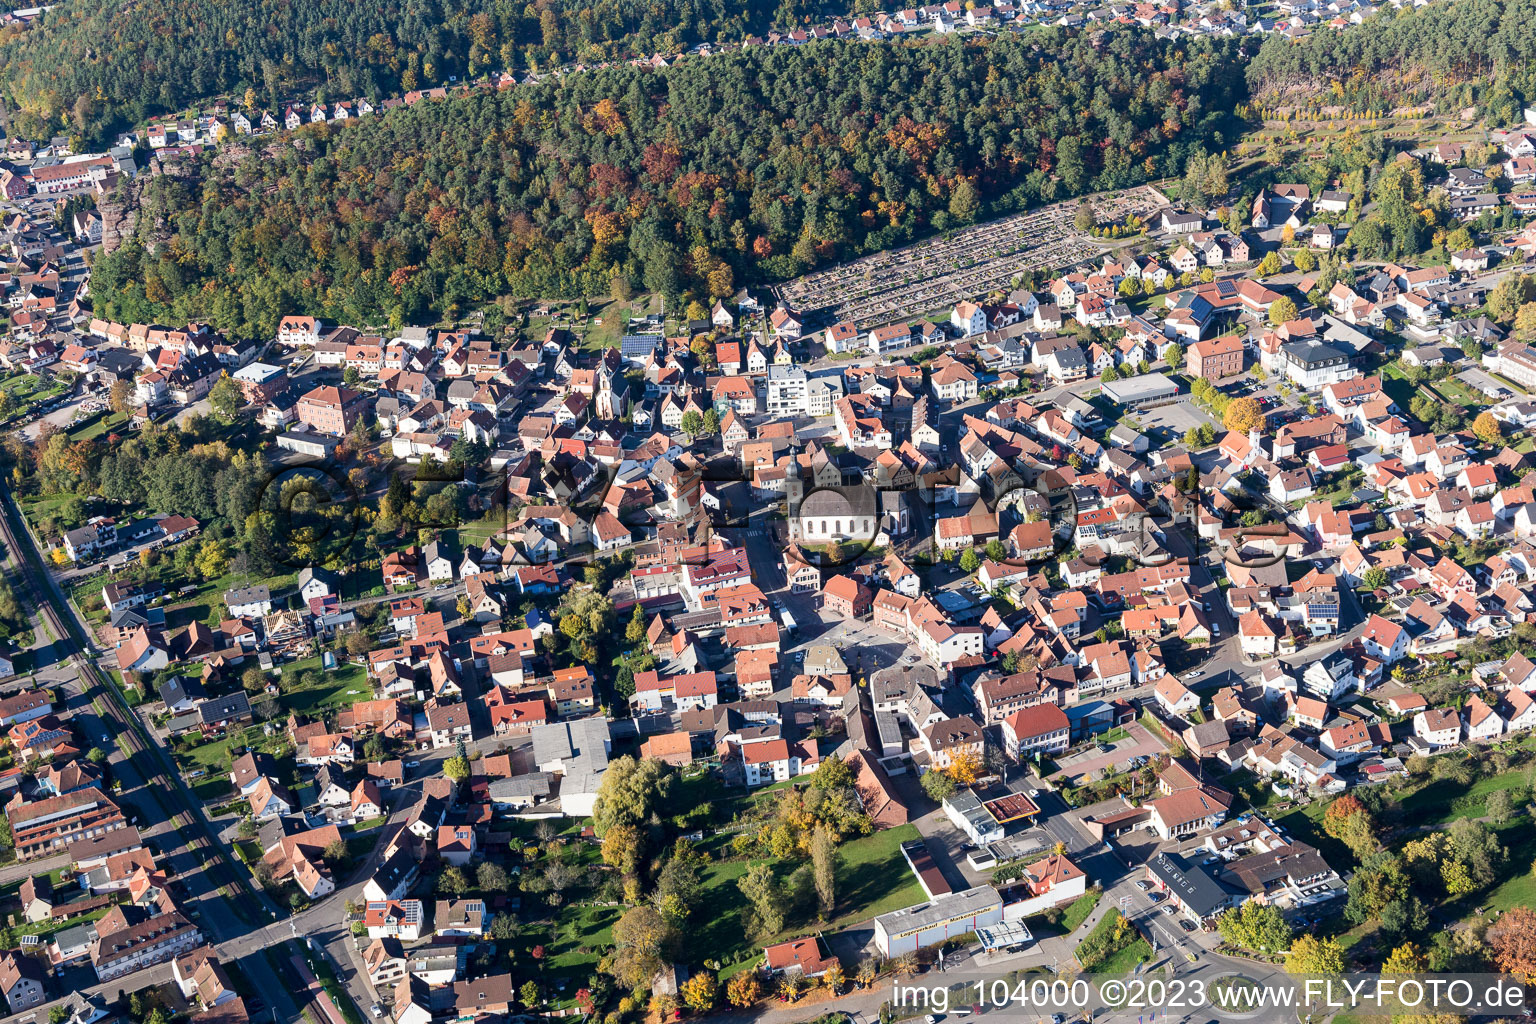 Dahn im Bundesland Rheinland-Pfalz, Deutschland aus der Drohnenperspektive